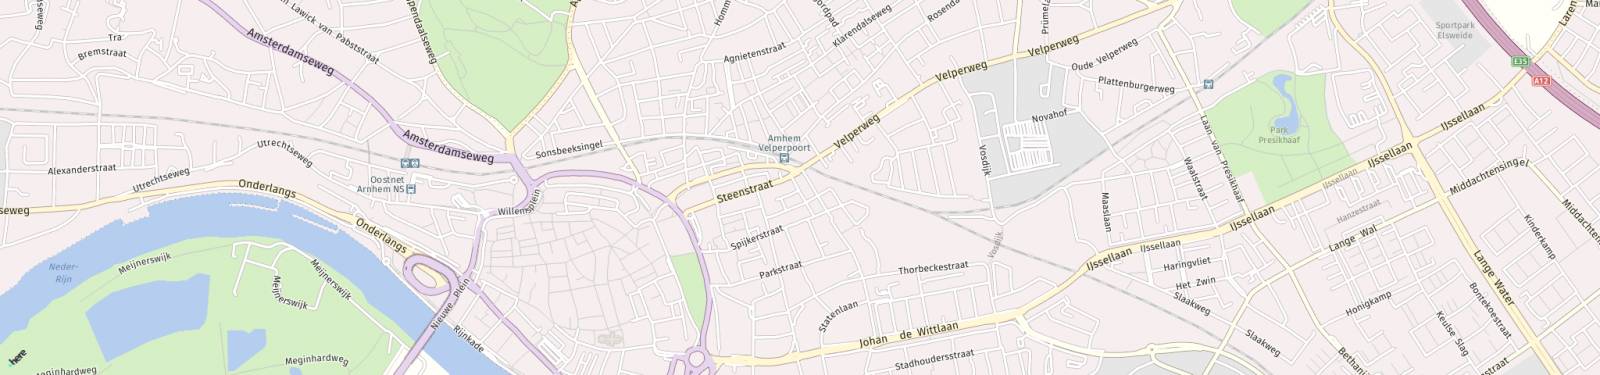 Kaart met locatie Kamer Driekoningenstraat